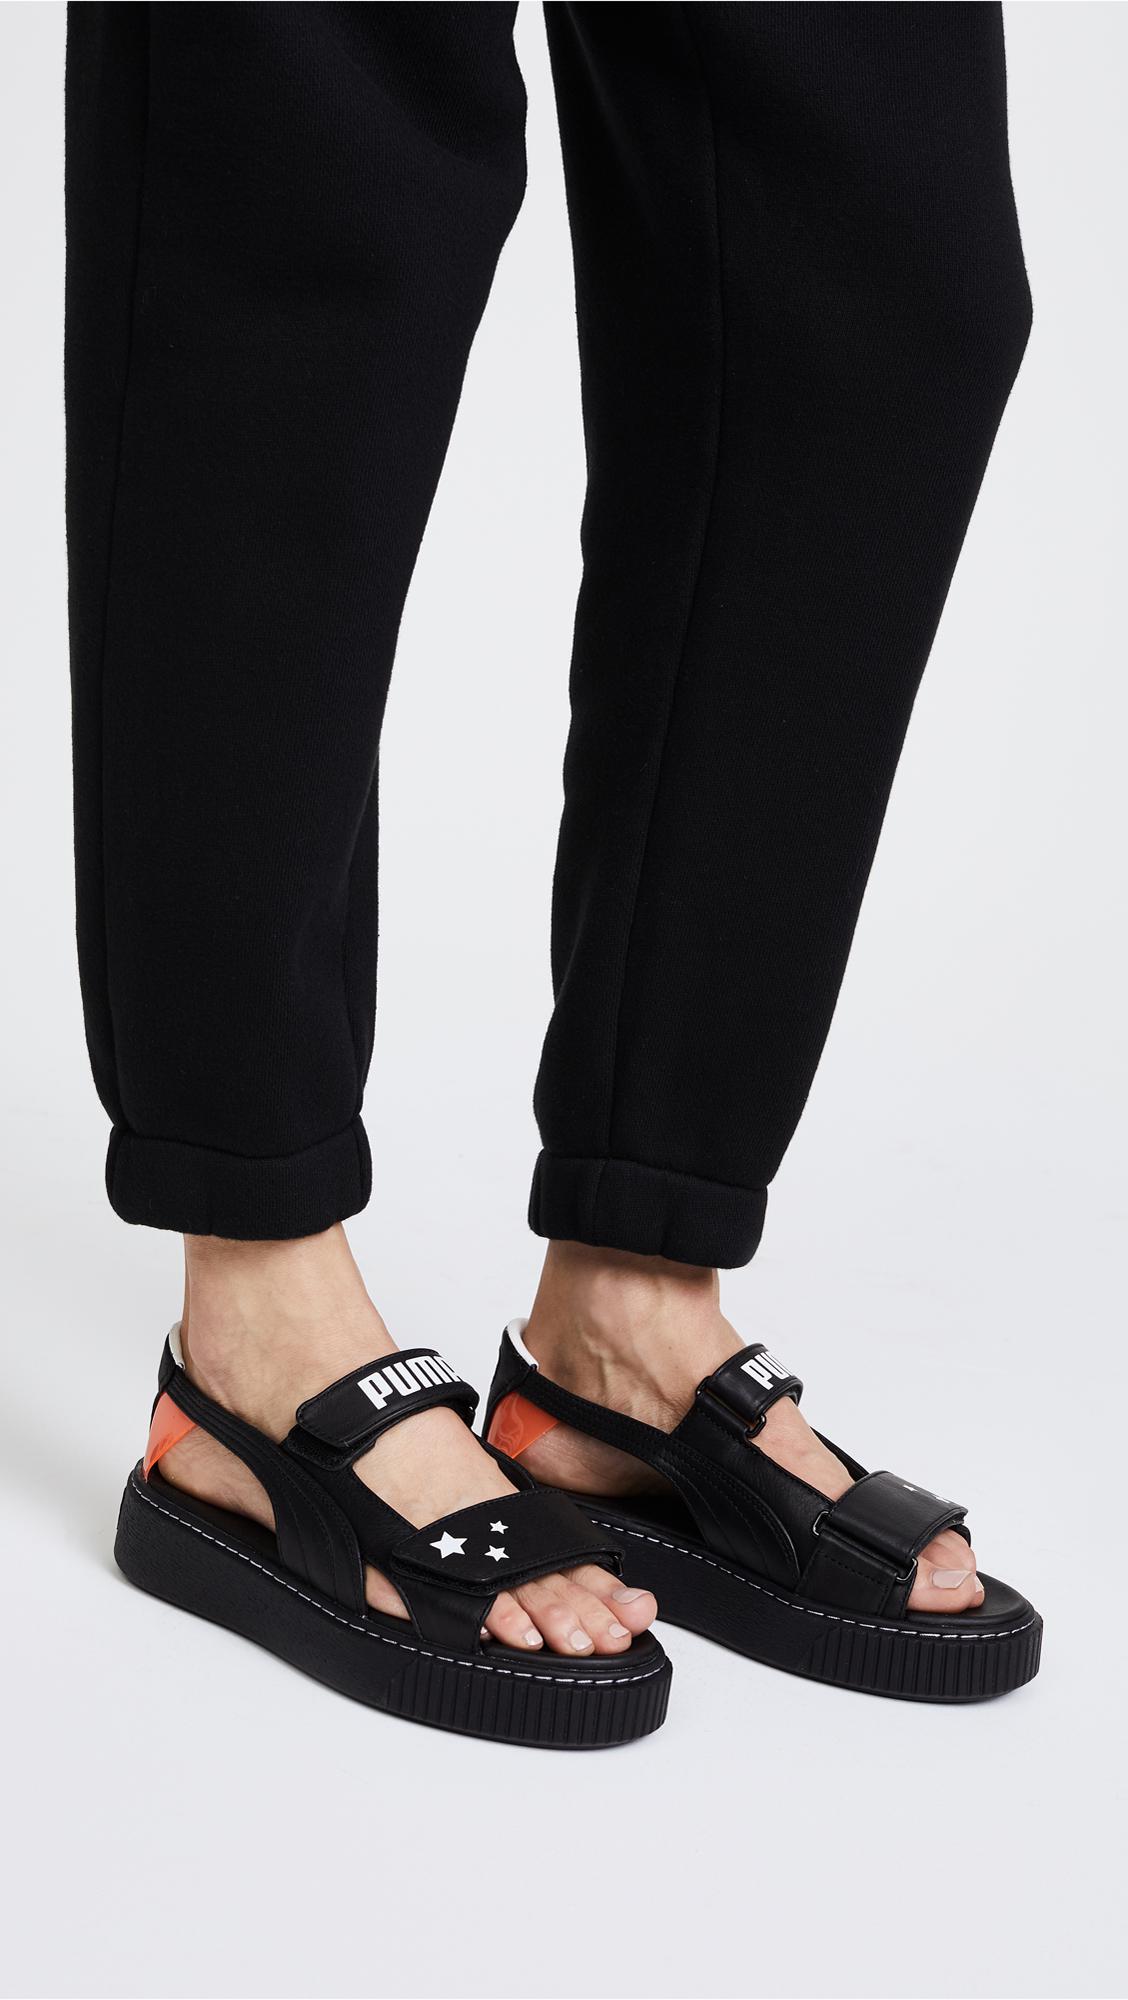 PUMA Leather X Sophia Webster Platform Sandals in Black | Lyst